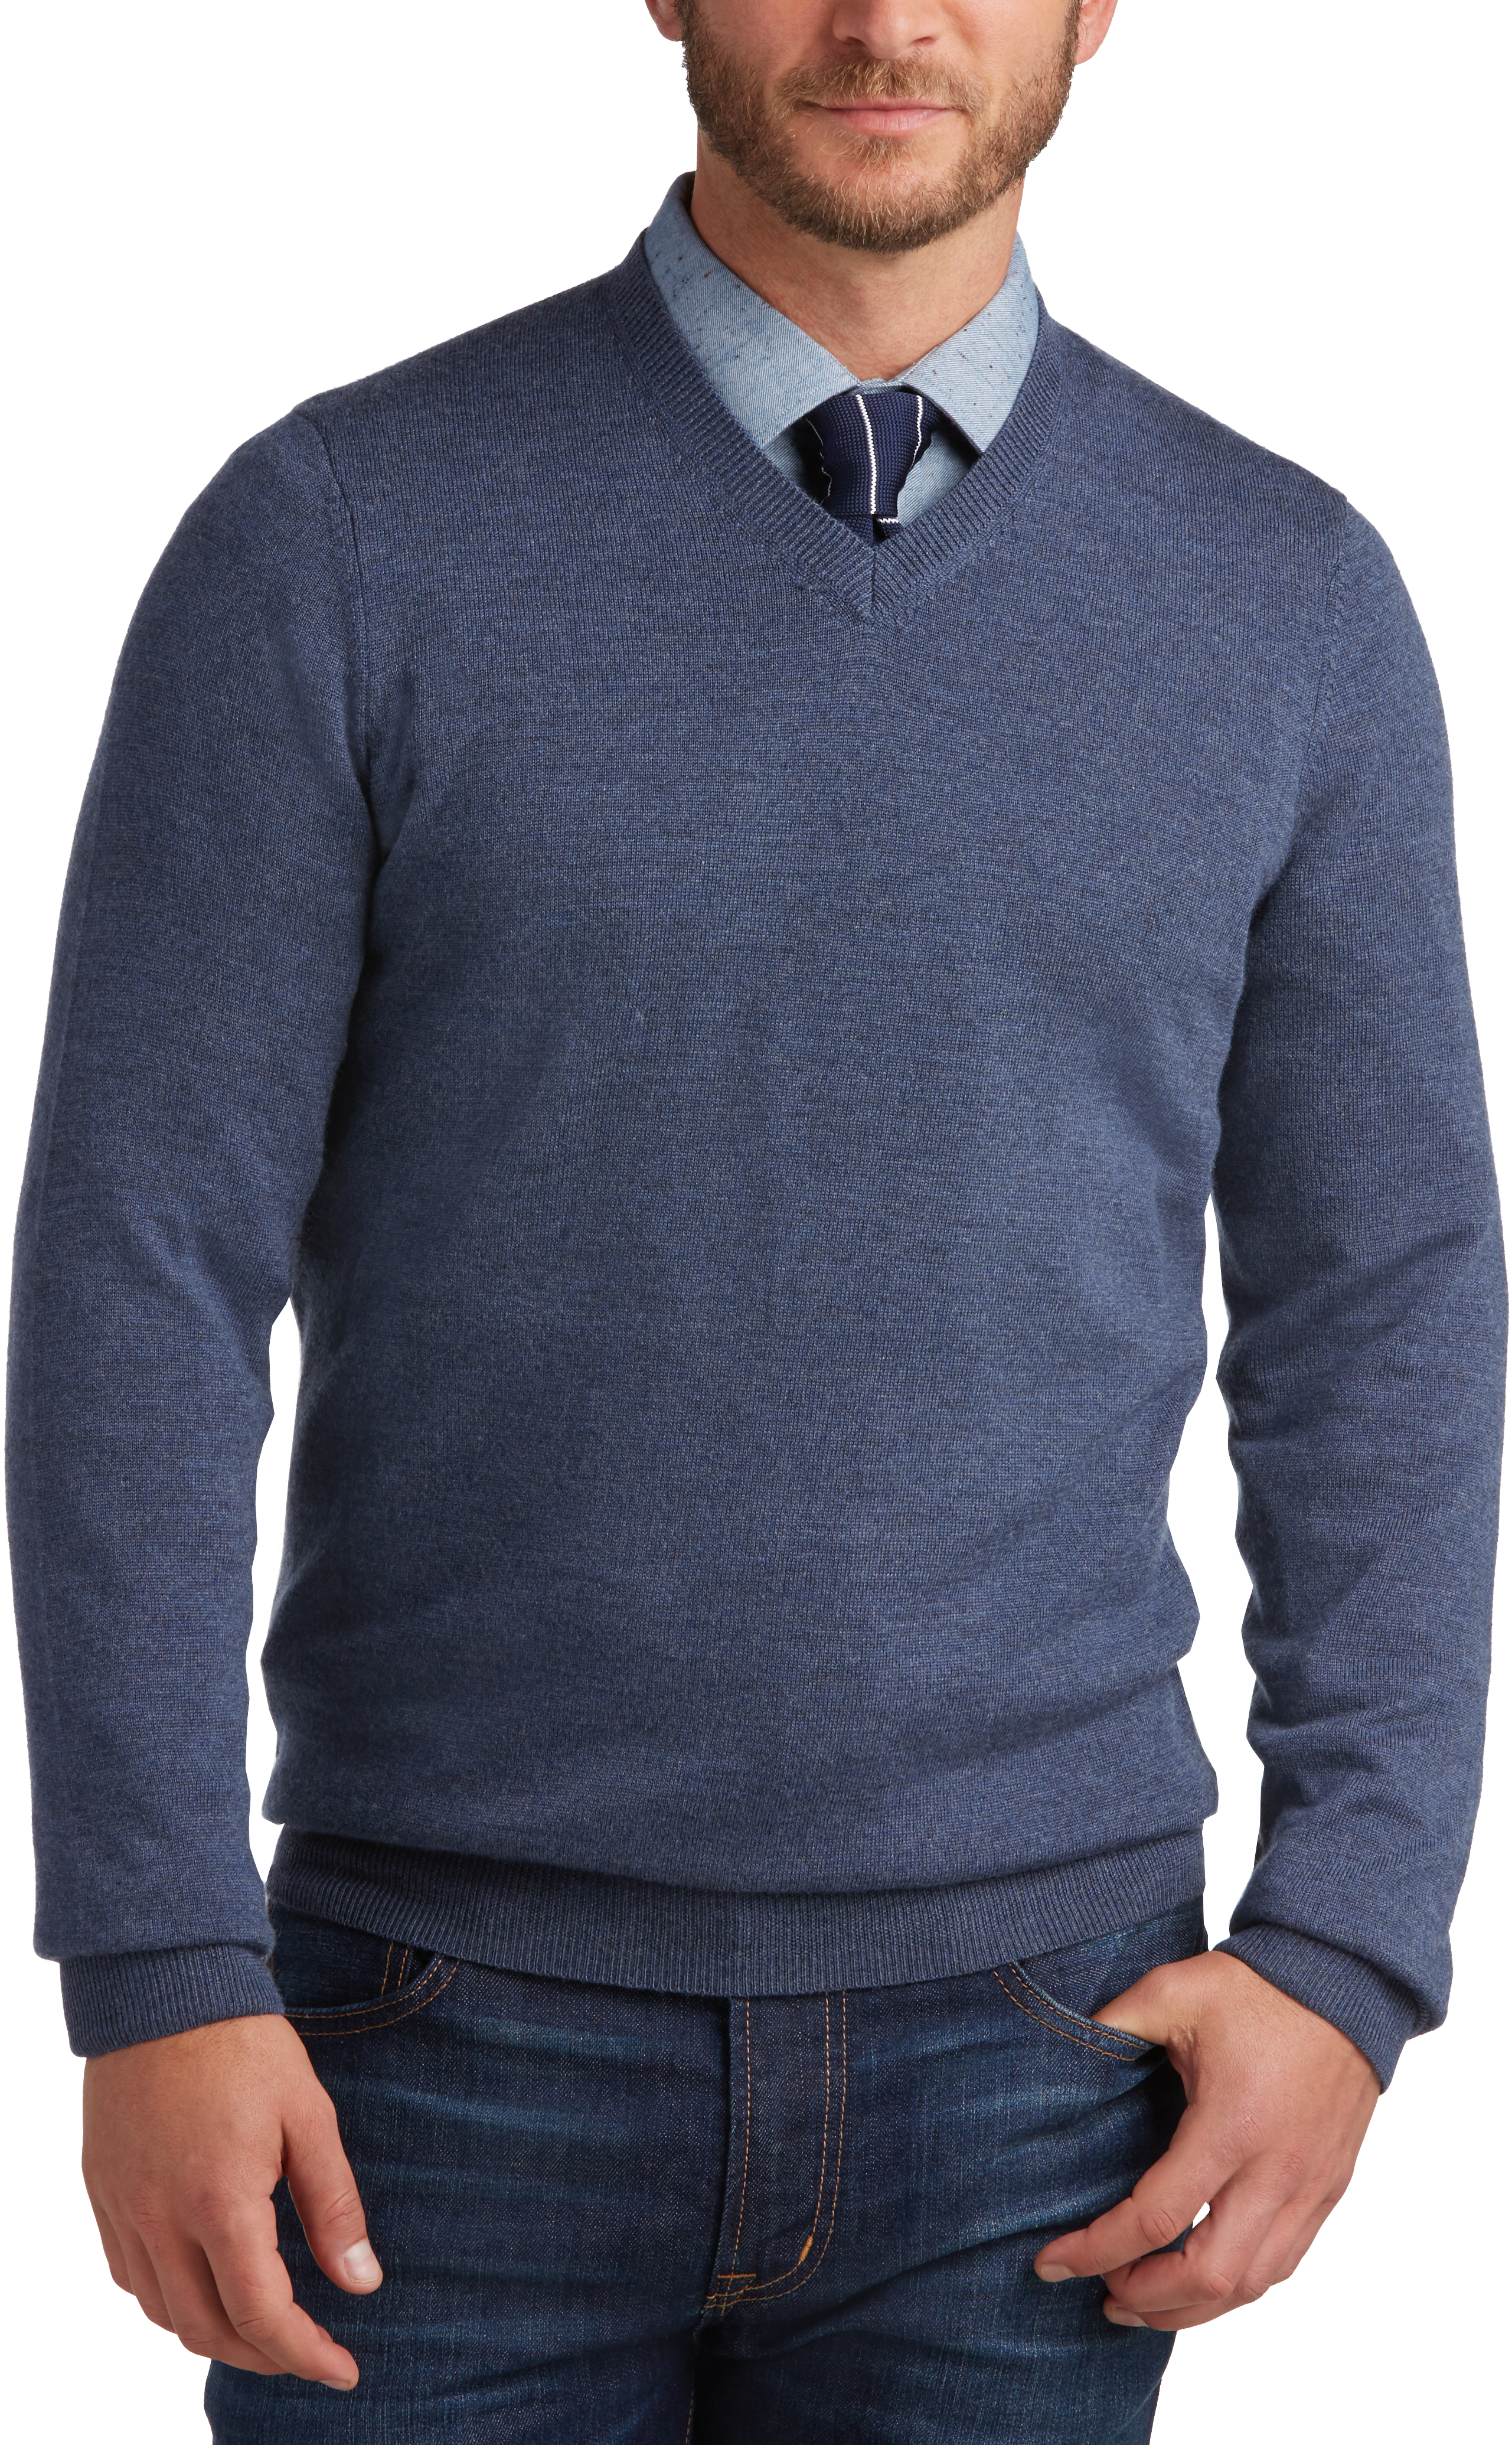 Joseph Abboud Slate V-Neck Merino Wool Sweater - Men's Sale | Men's ...